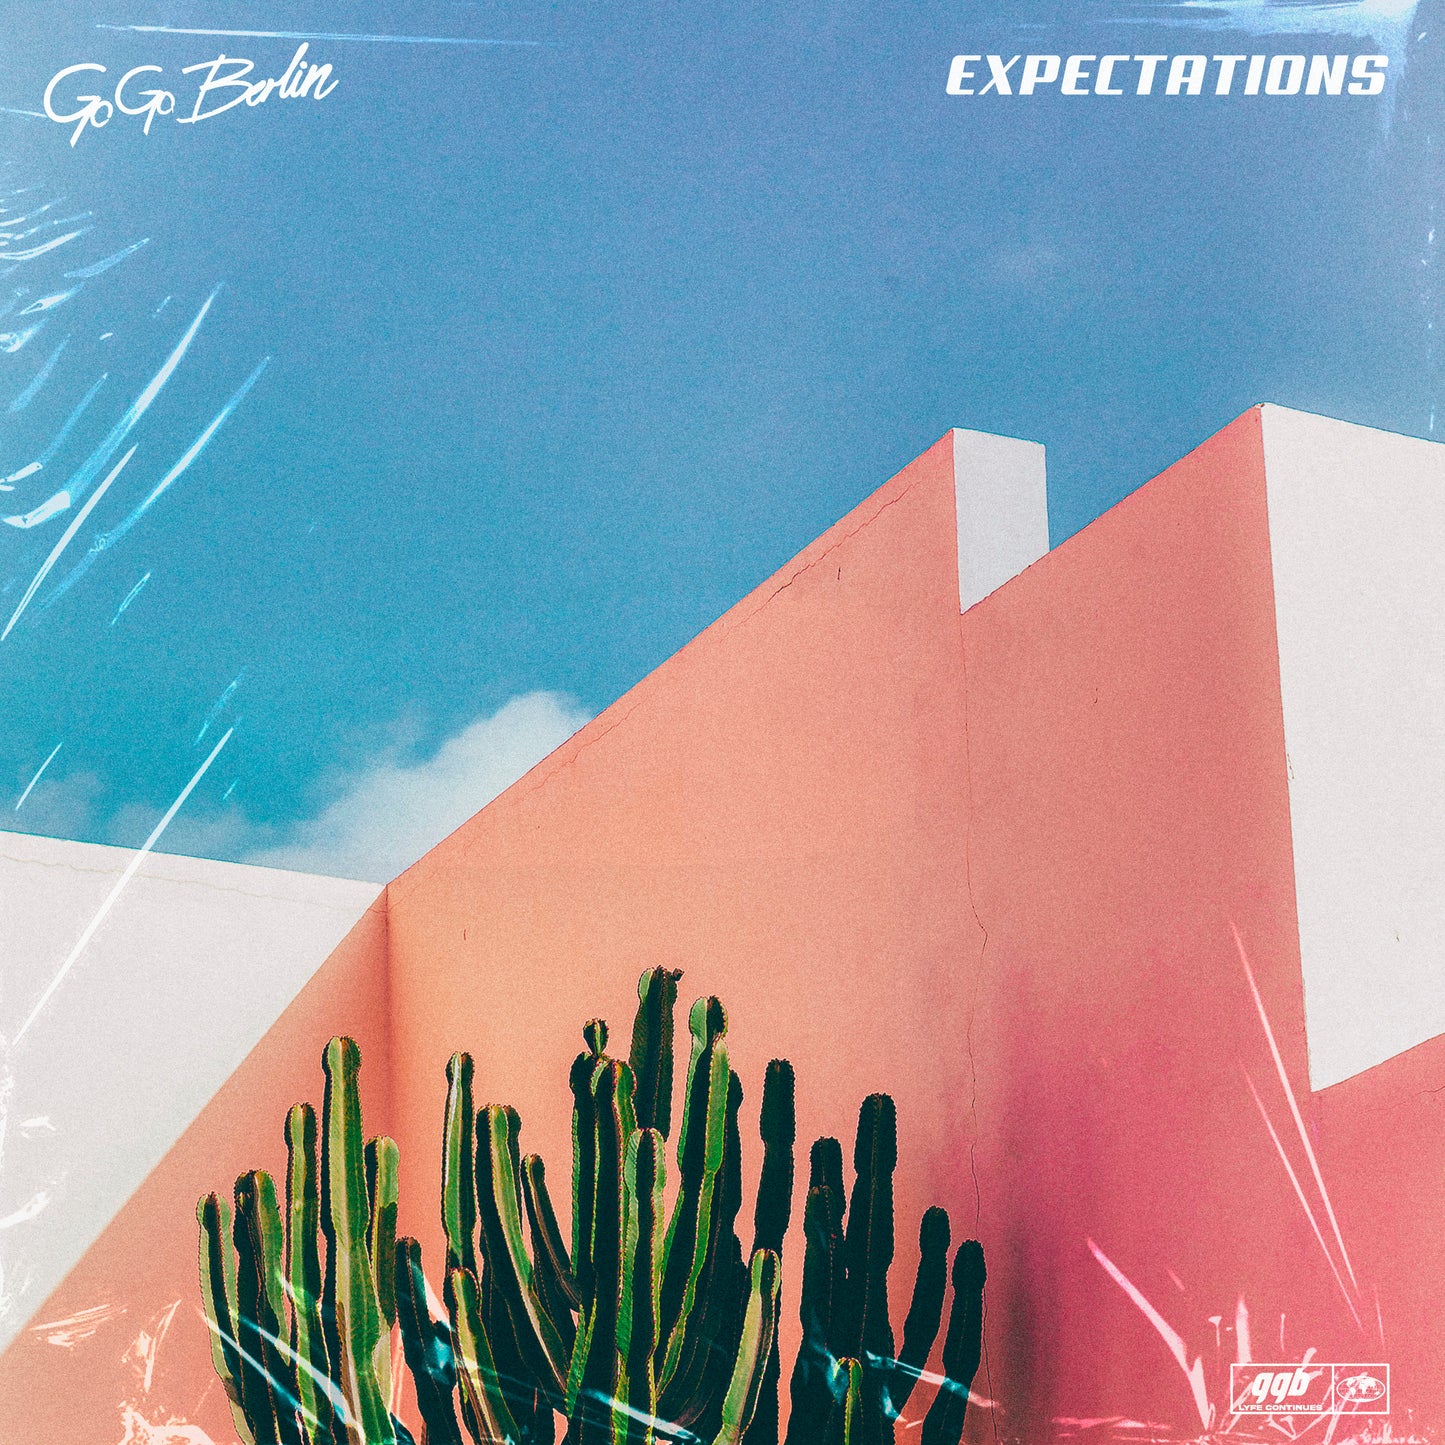 Go Go Berlin - Expectations